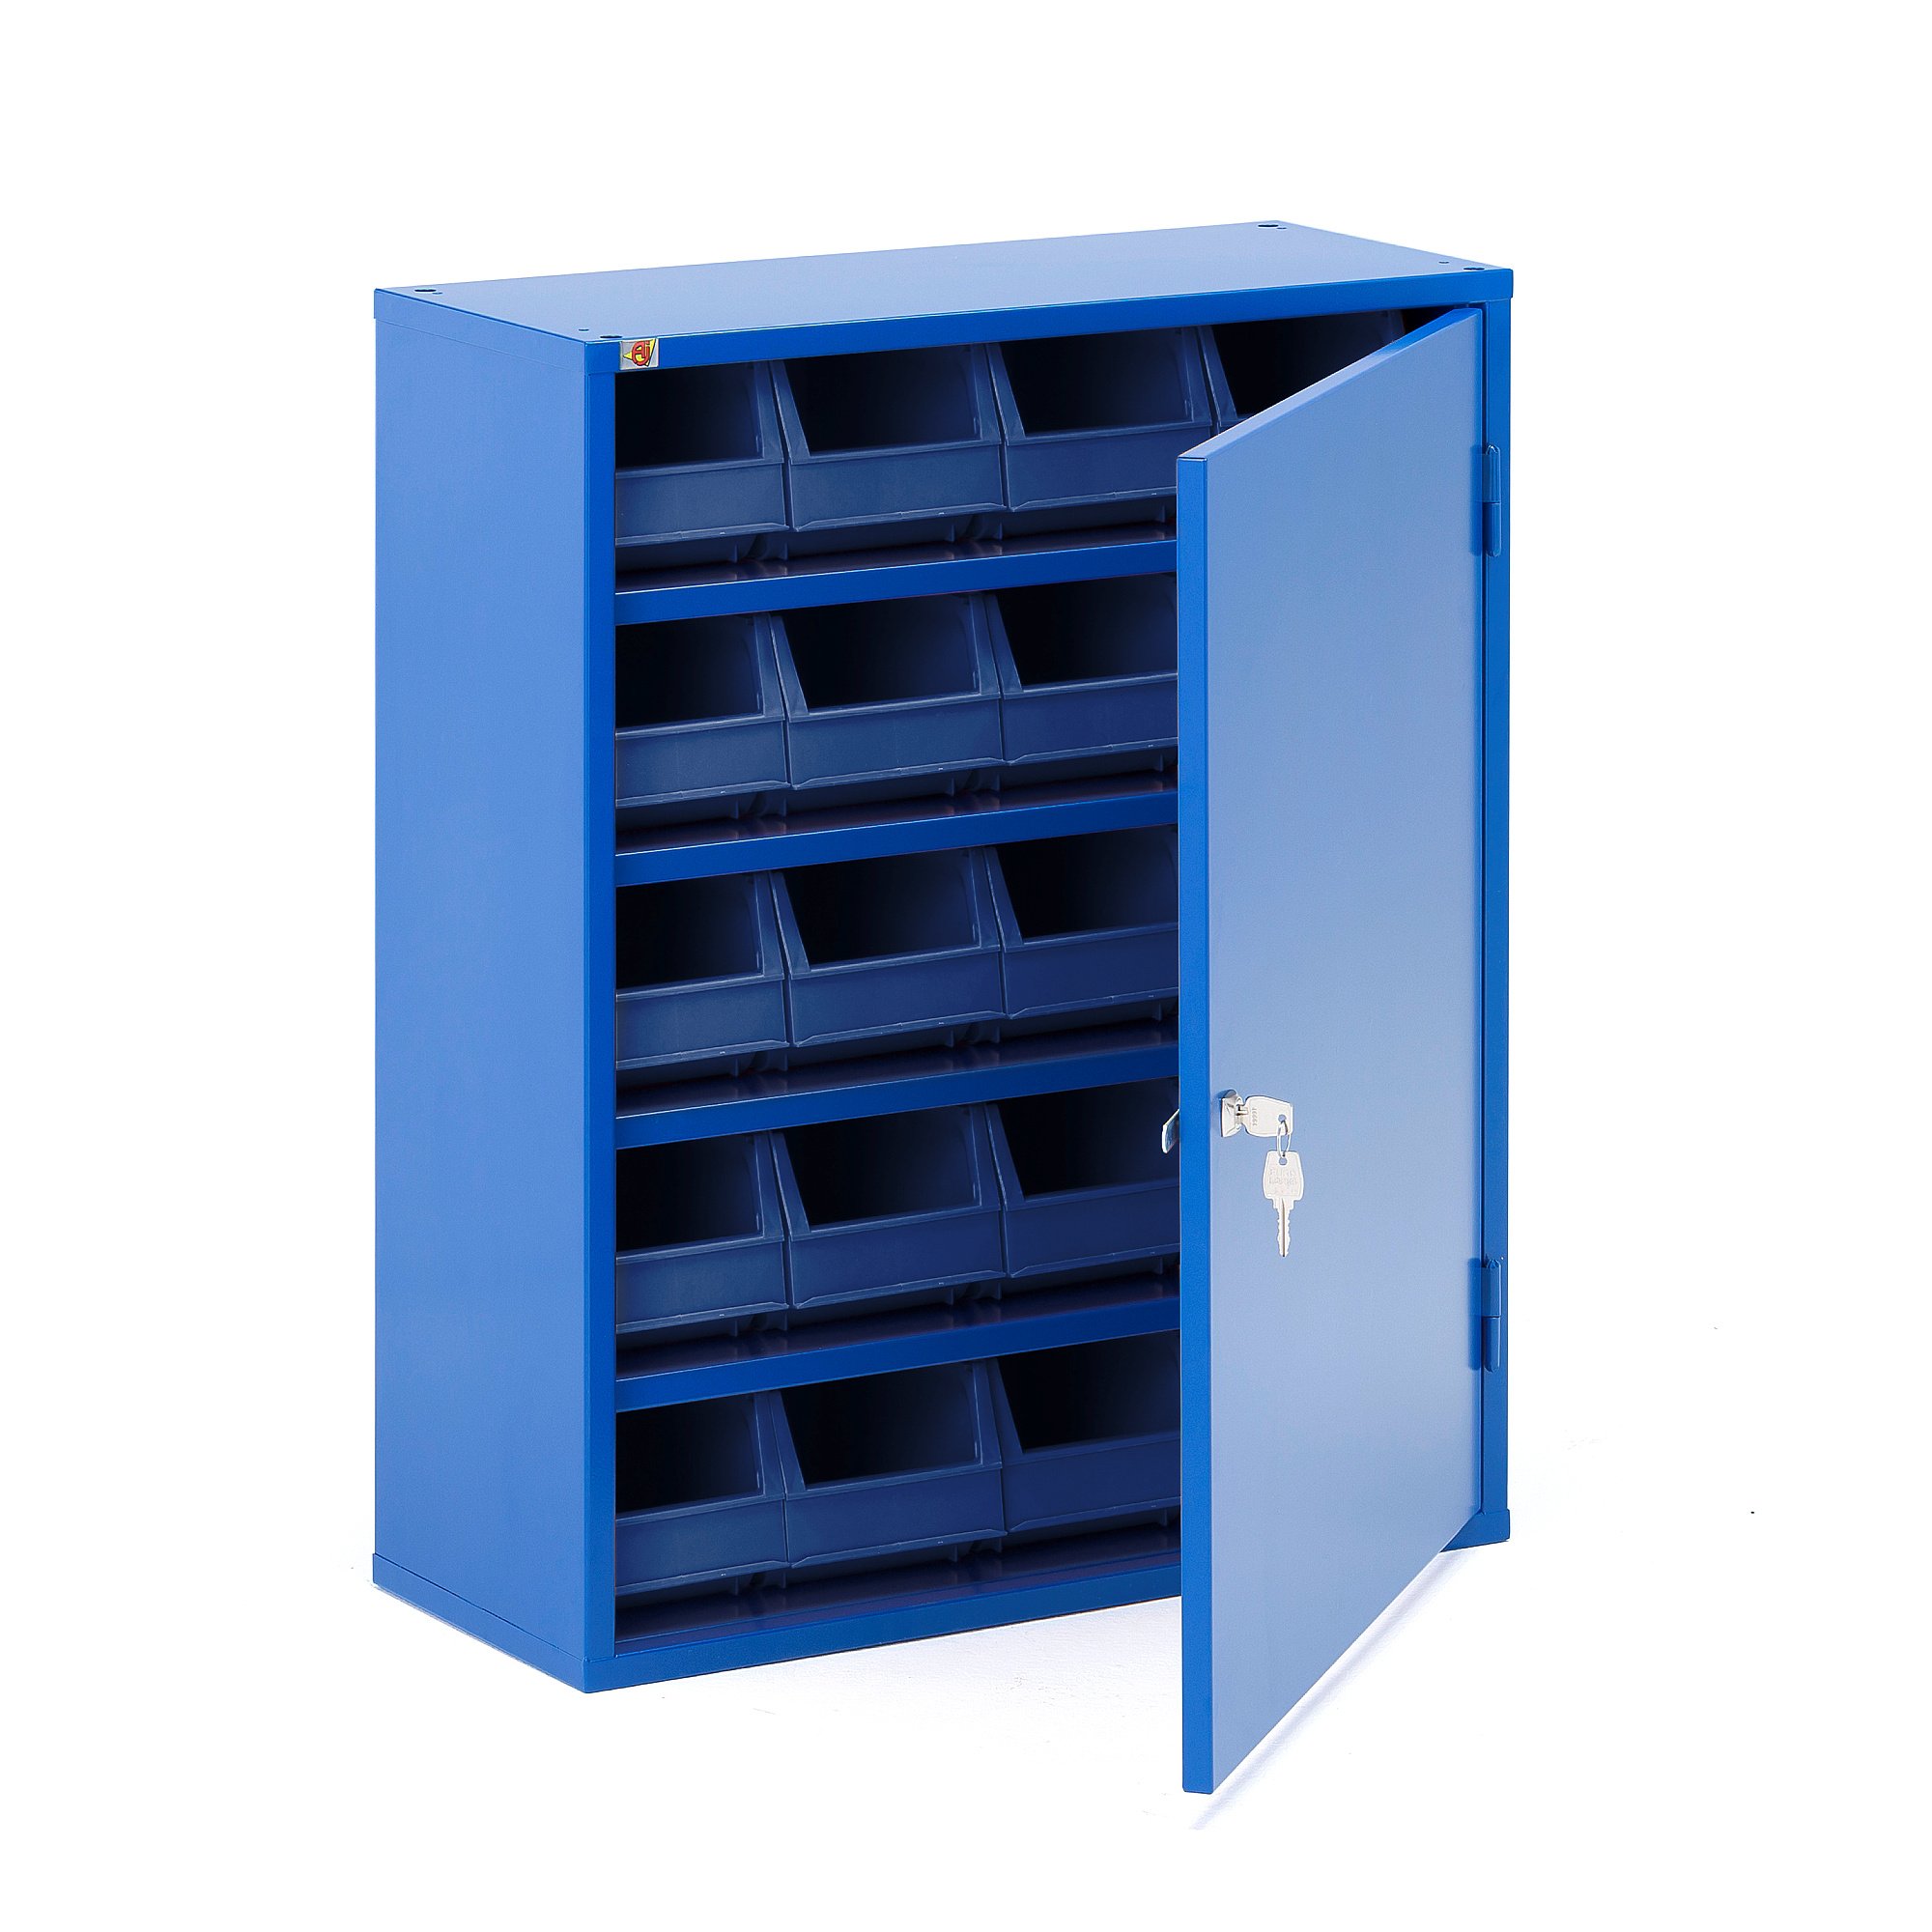 Kovová skříňka SERVE, s plastovými boxy, 800x660x275 mm, modrá